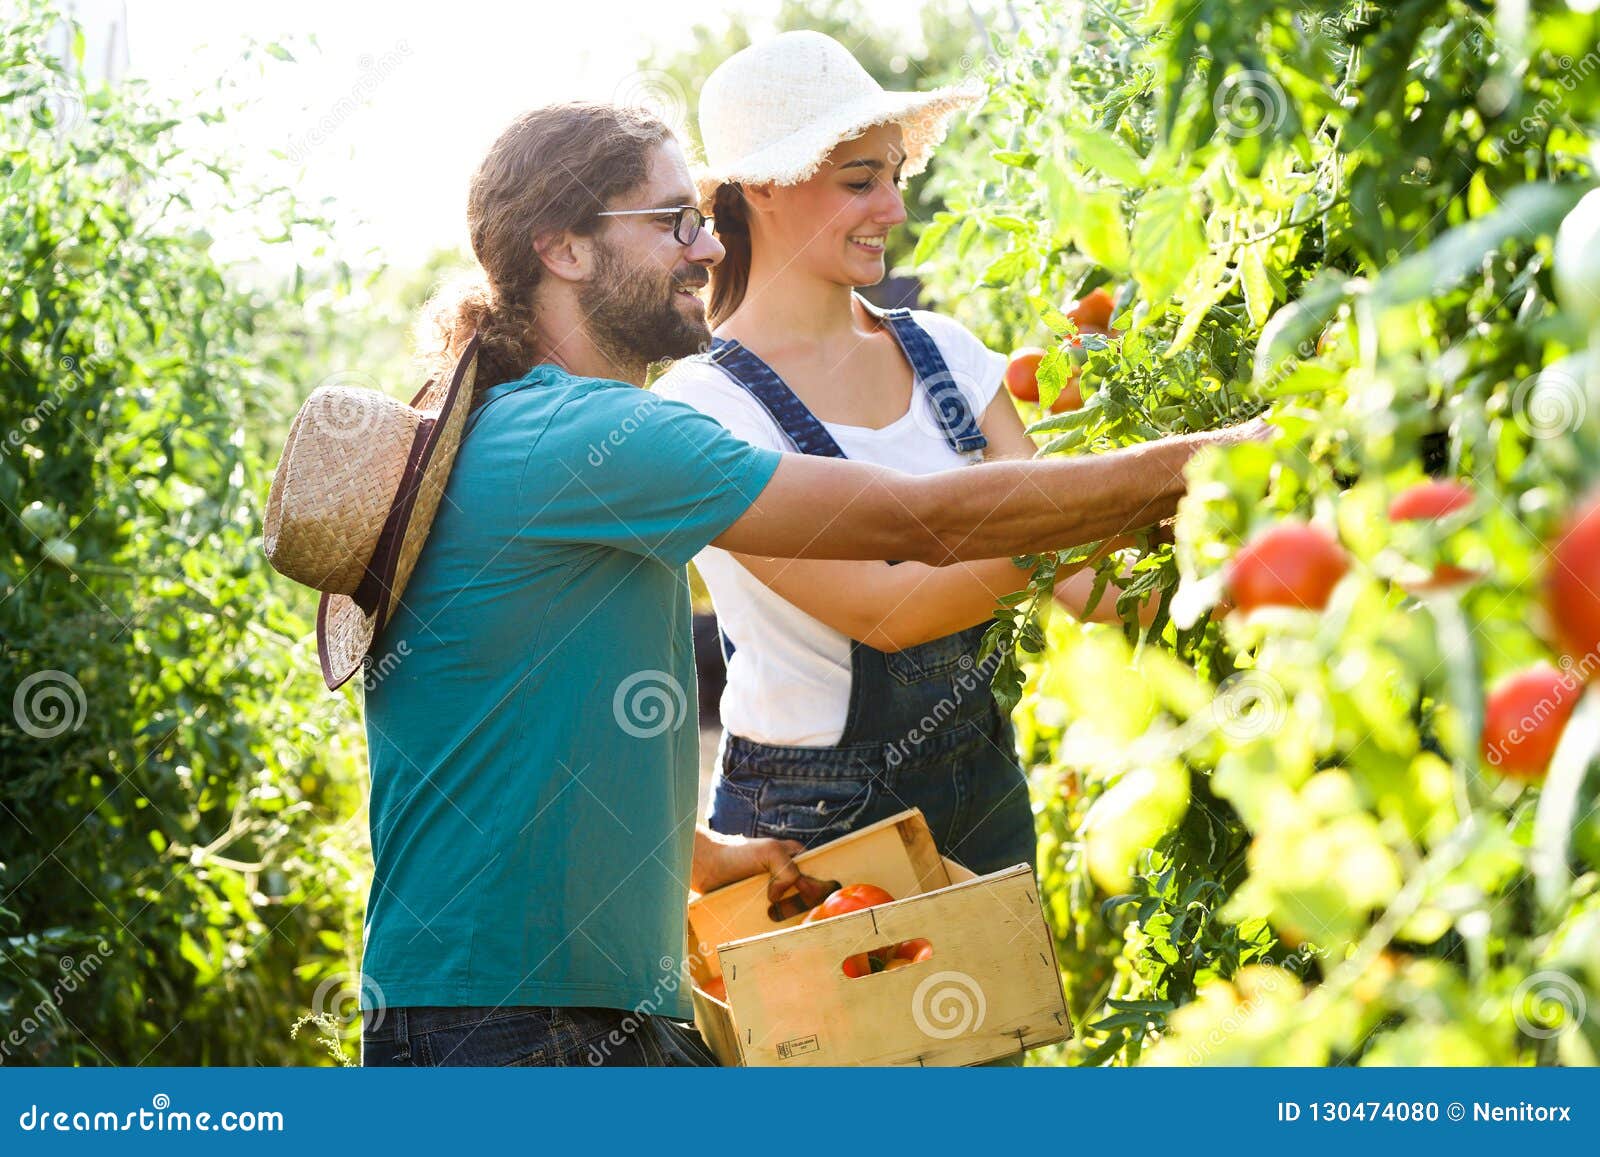 收获新鲜的蕃茄和投入在从庭院的一个篮子的园艺家夫妇. 园艺家夫妇射击收获新鲜的蕃茄和投入在从庭院的一个篮子的